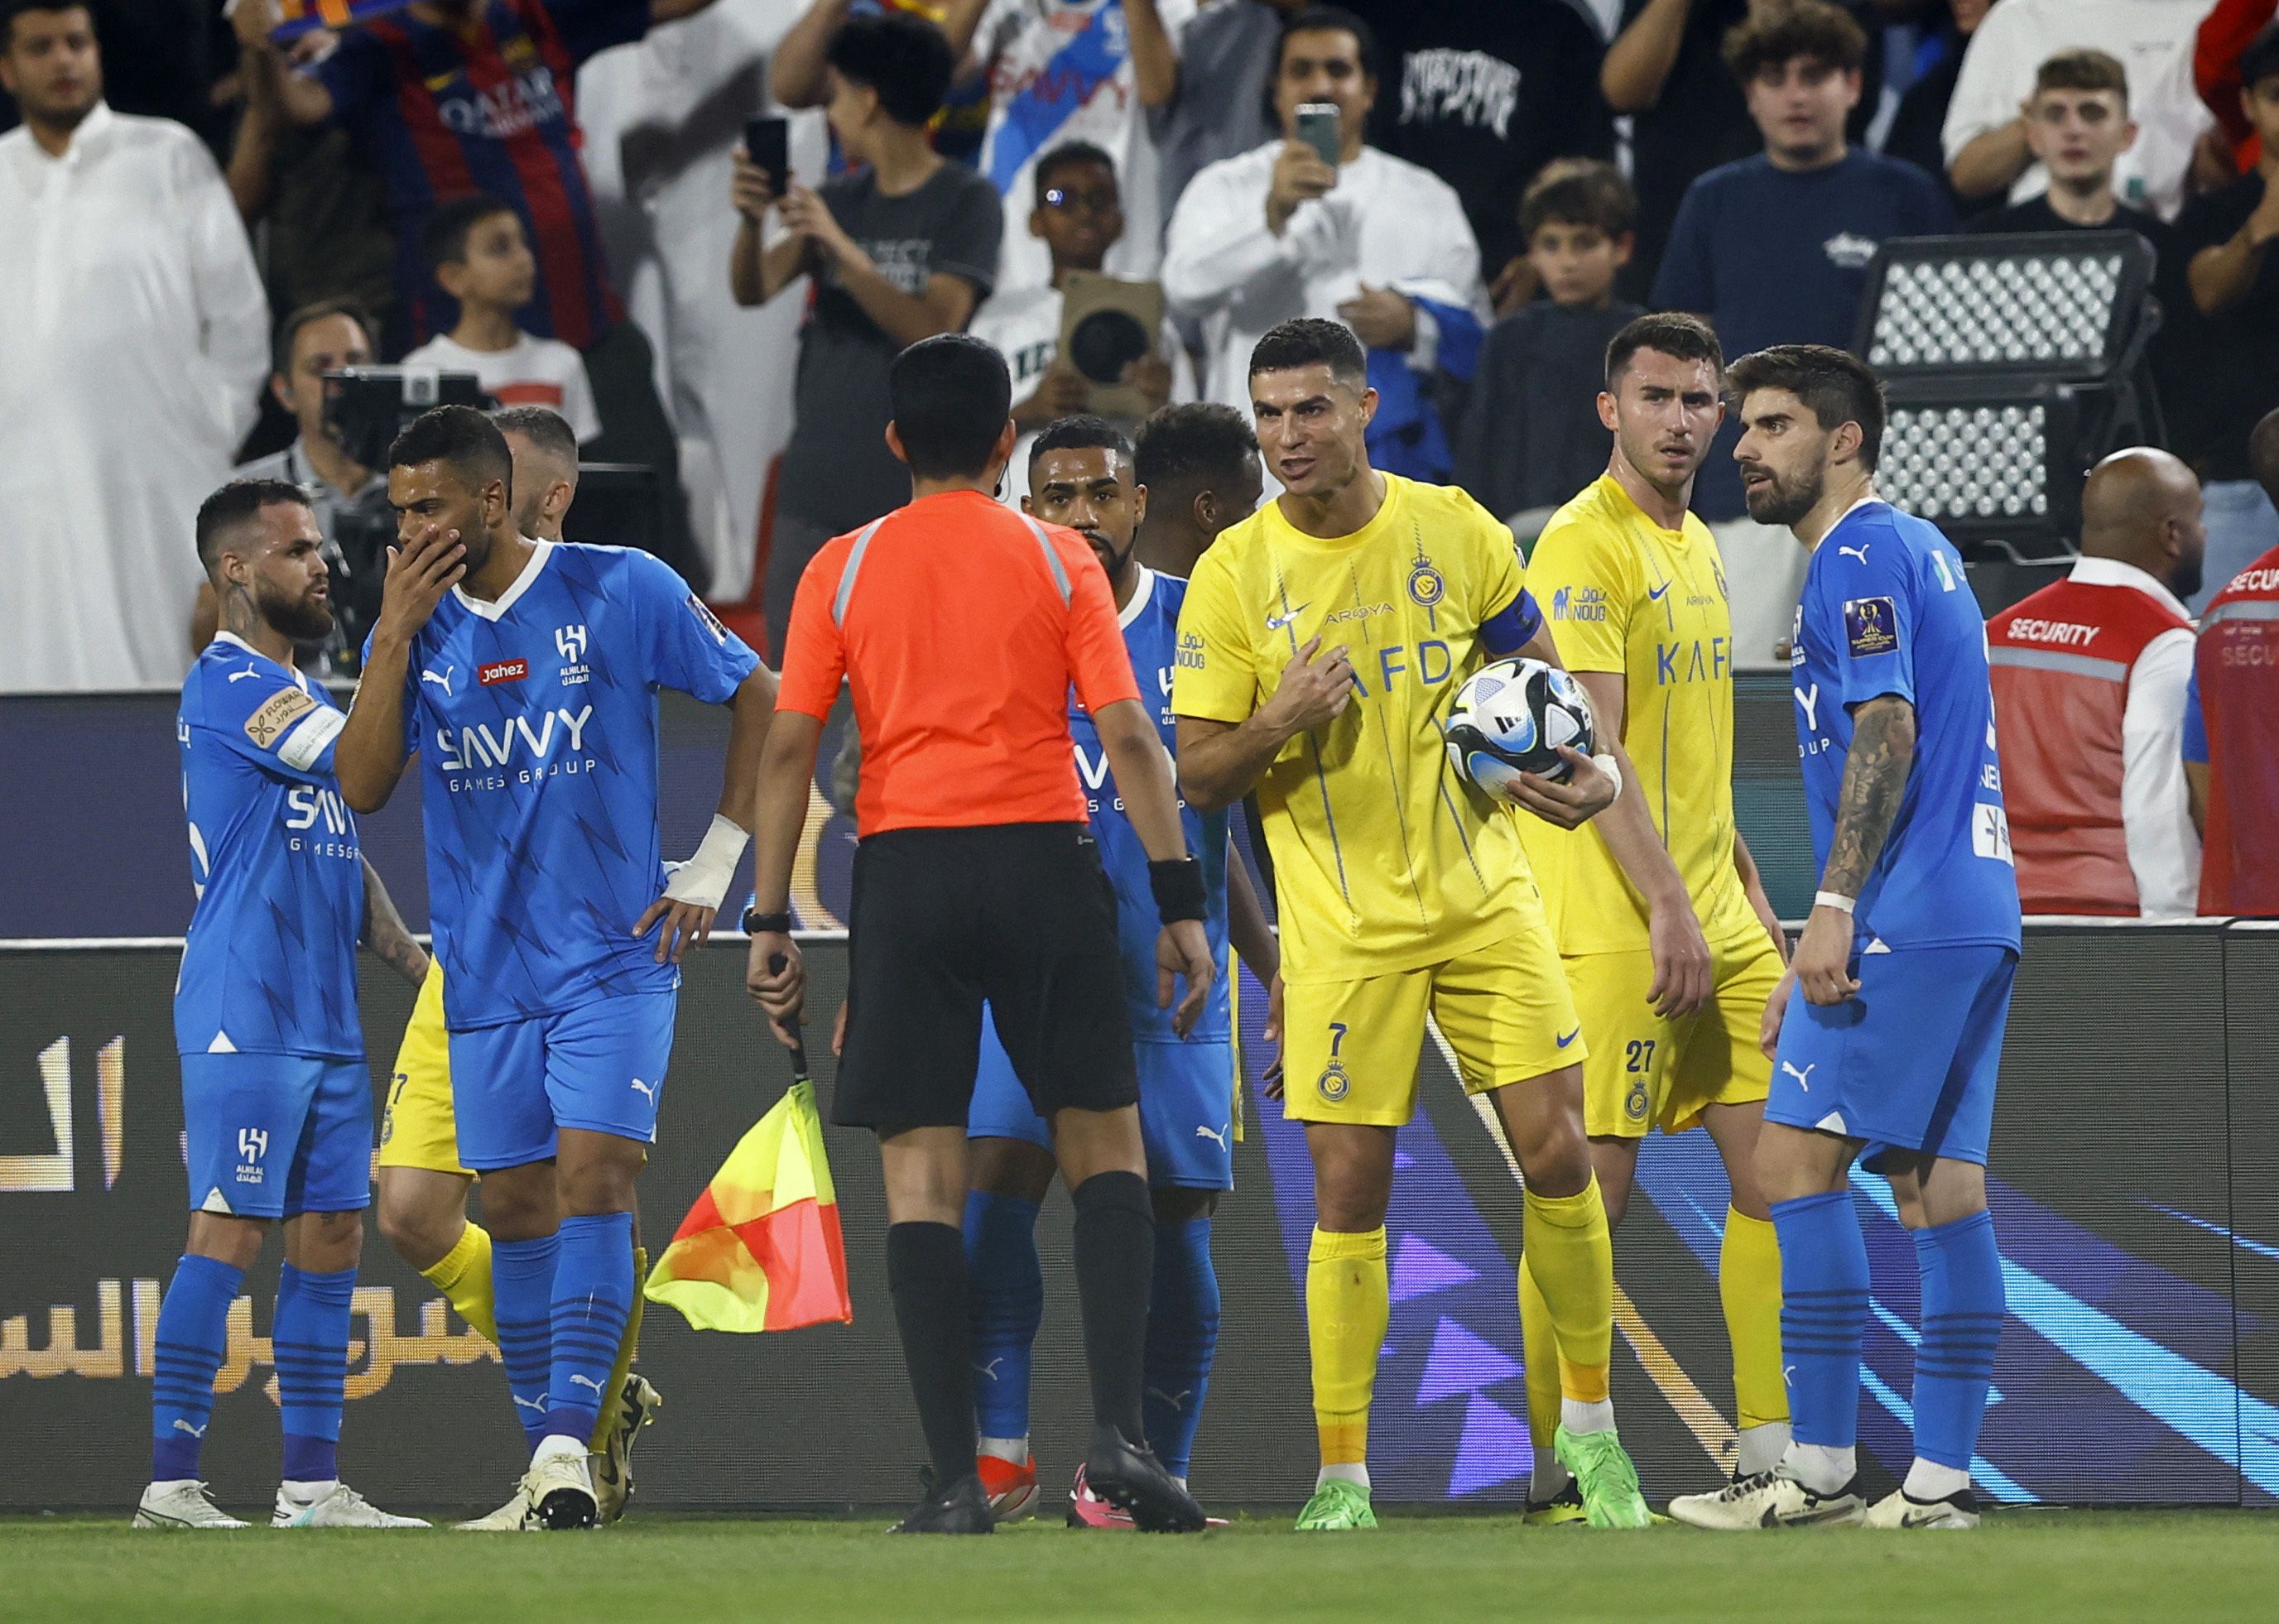 El público del Al Hilal, y varios de sus futbolistas se burlaron de Cristiano Ronaldo. Los jugadores se rieron, mientras la gente le gritaba "Messi, Messi" (REUTERS/Rula Rouhana)